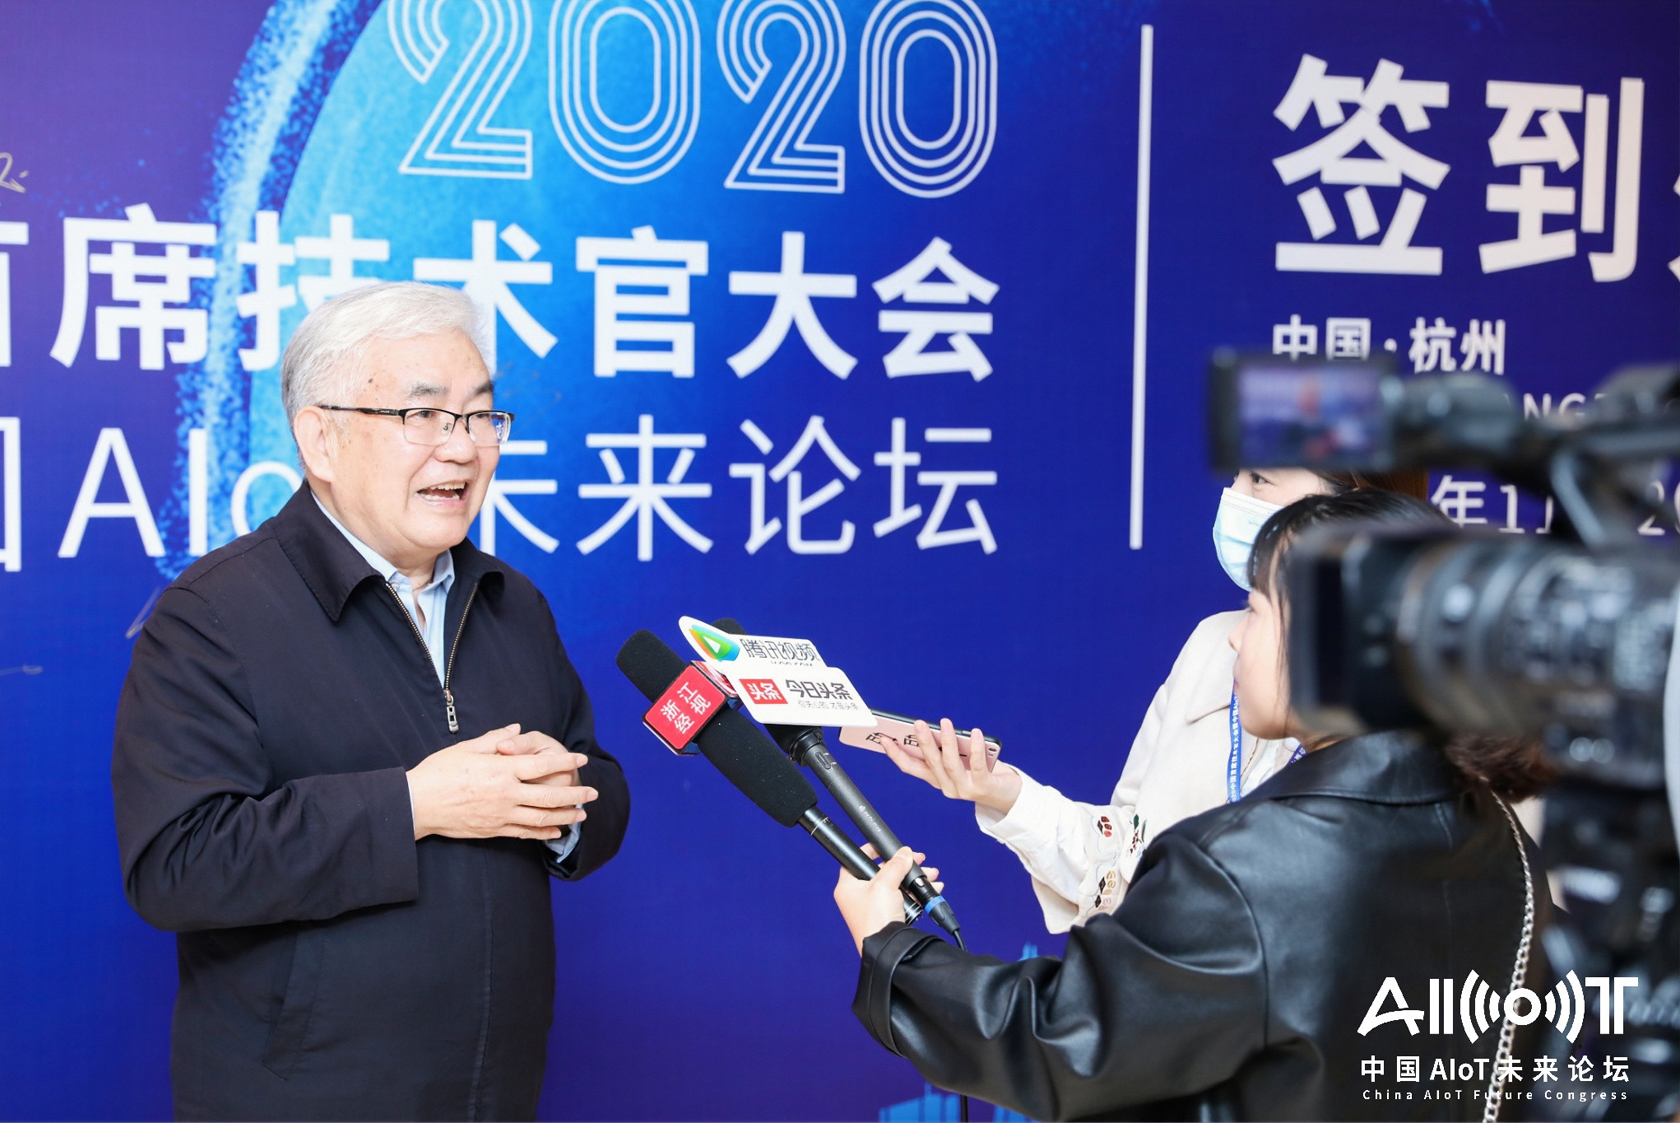 2020中国首席技术官大会暨中国AIoT未来论坛 智能科技企业展览-4